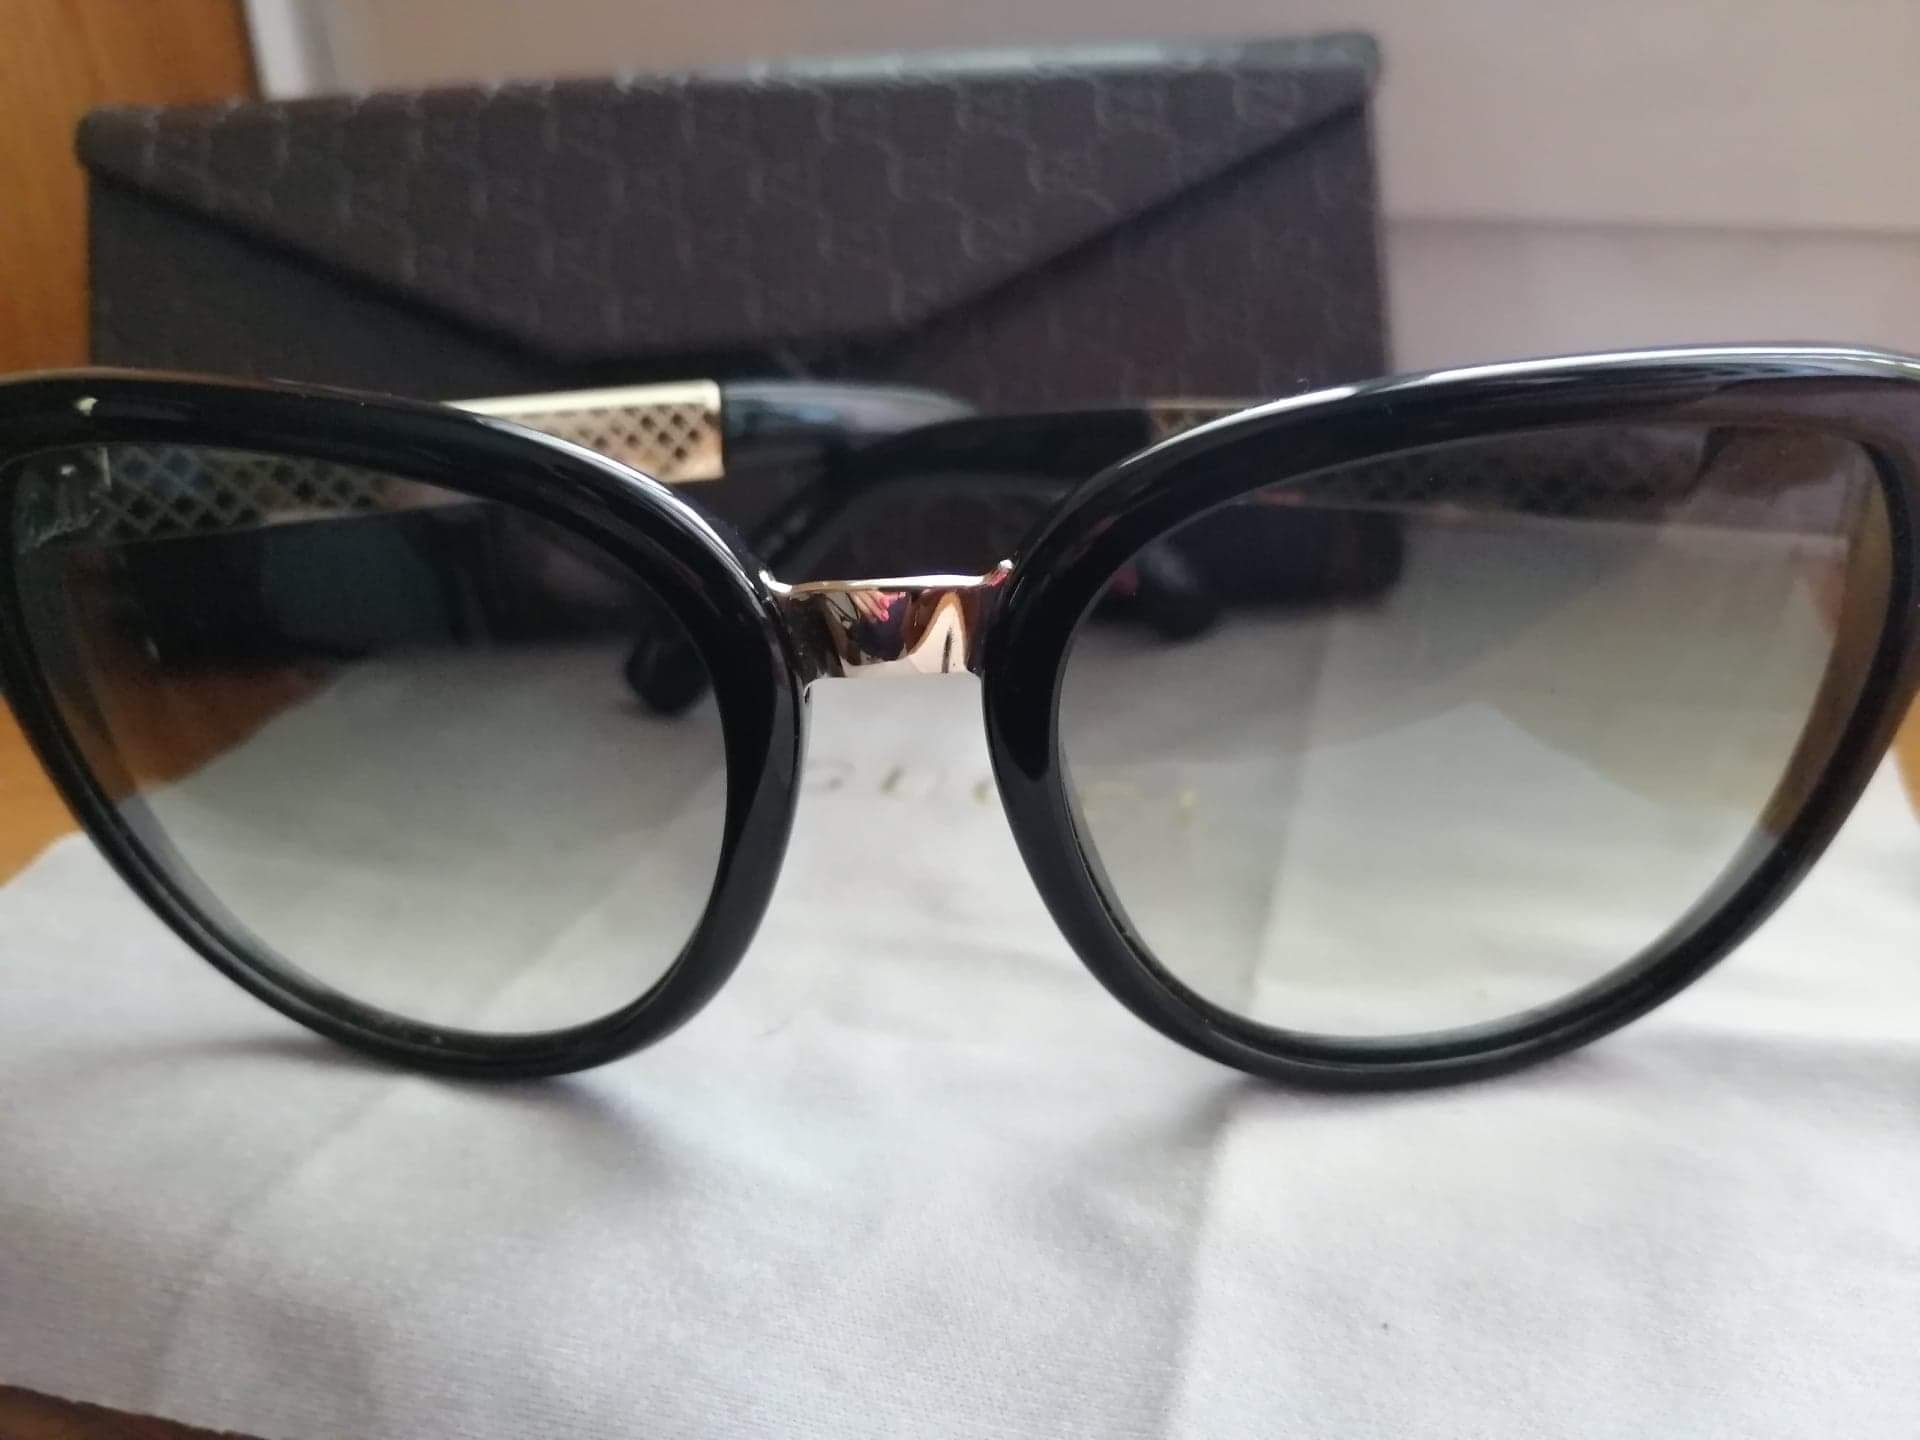 Óculos de Sol - Mulher - Gucci